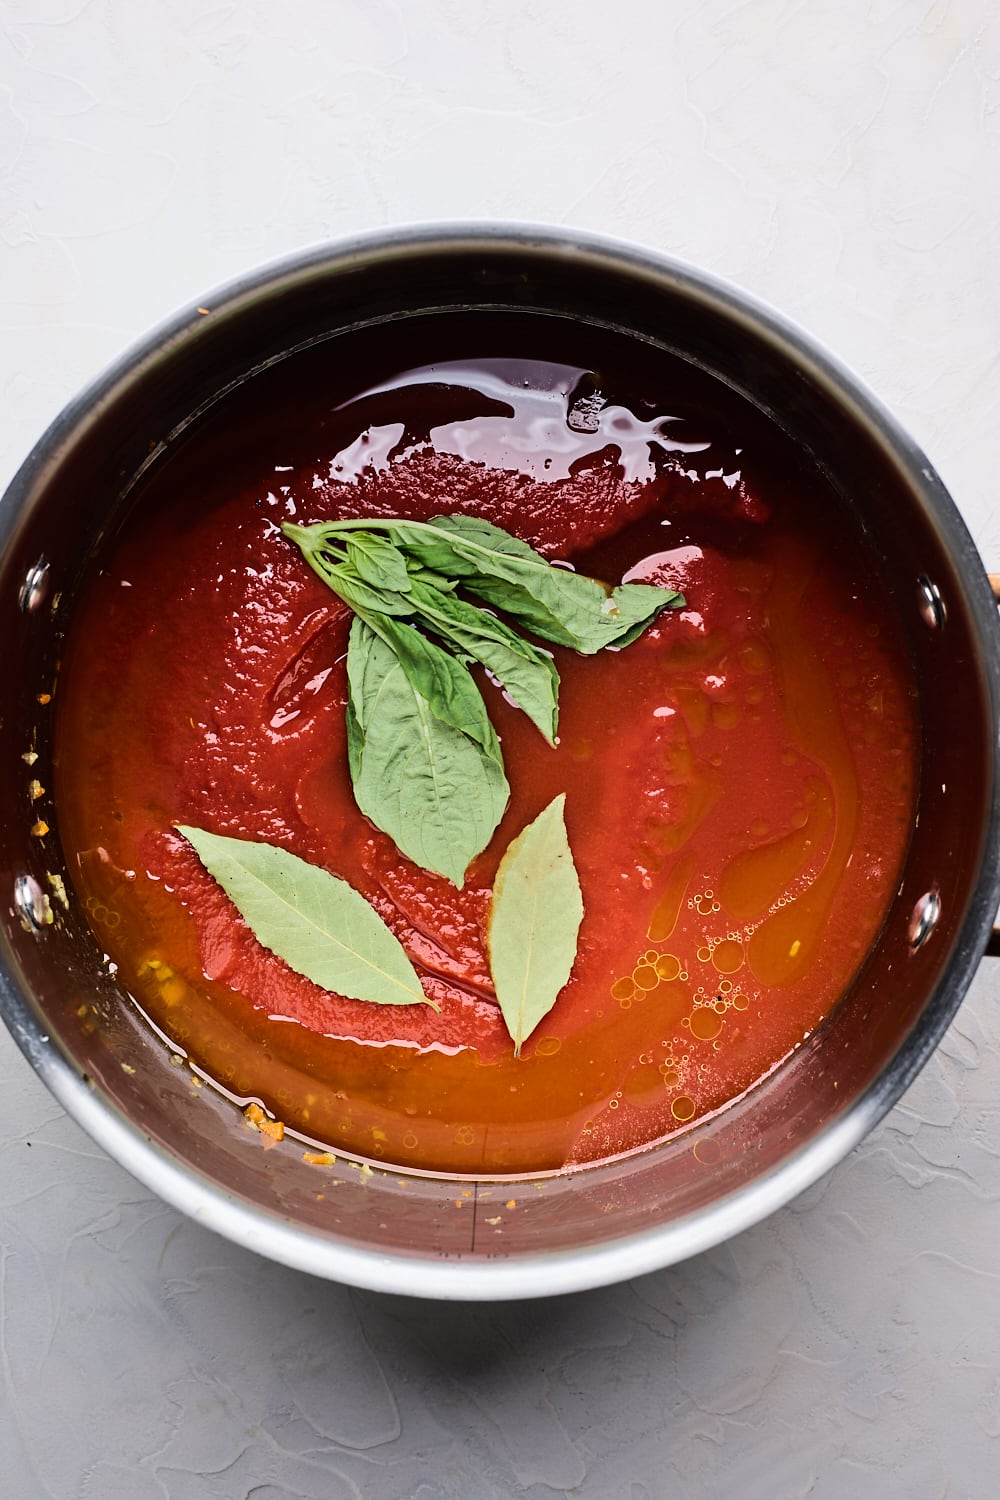 How to make Spaghetti Marinara sauce